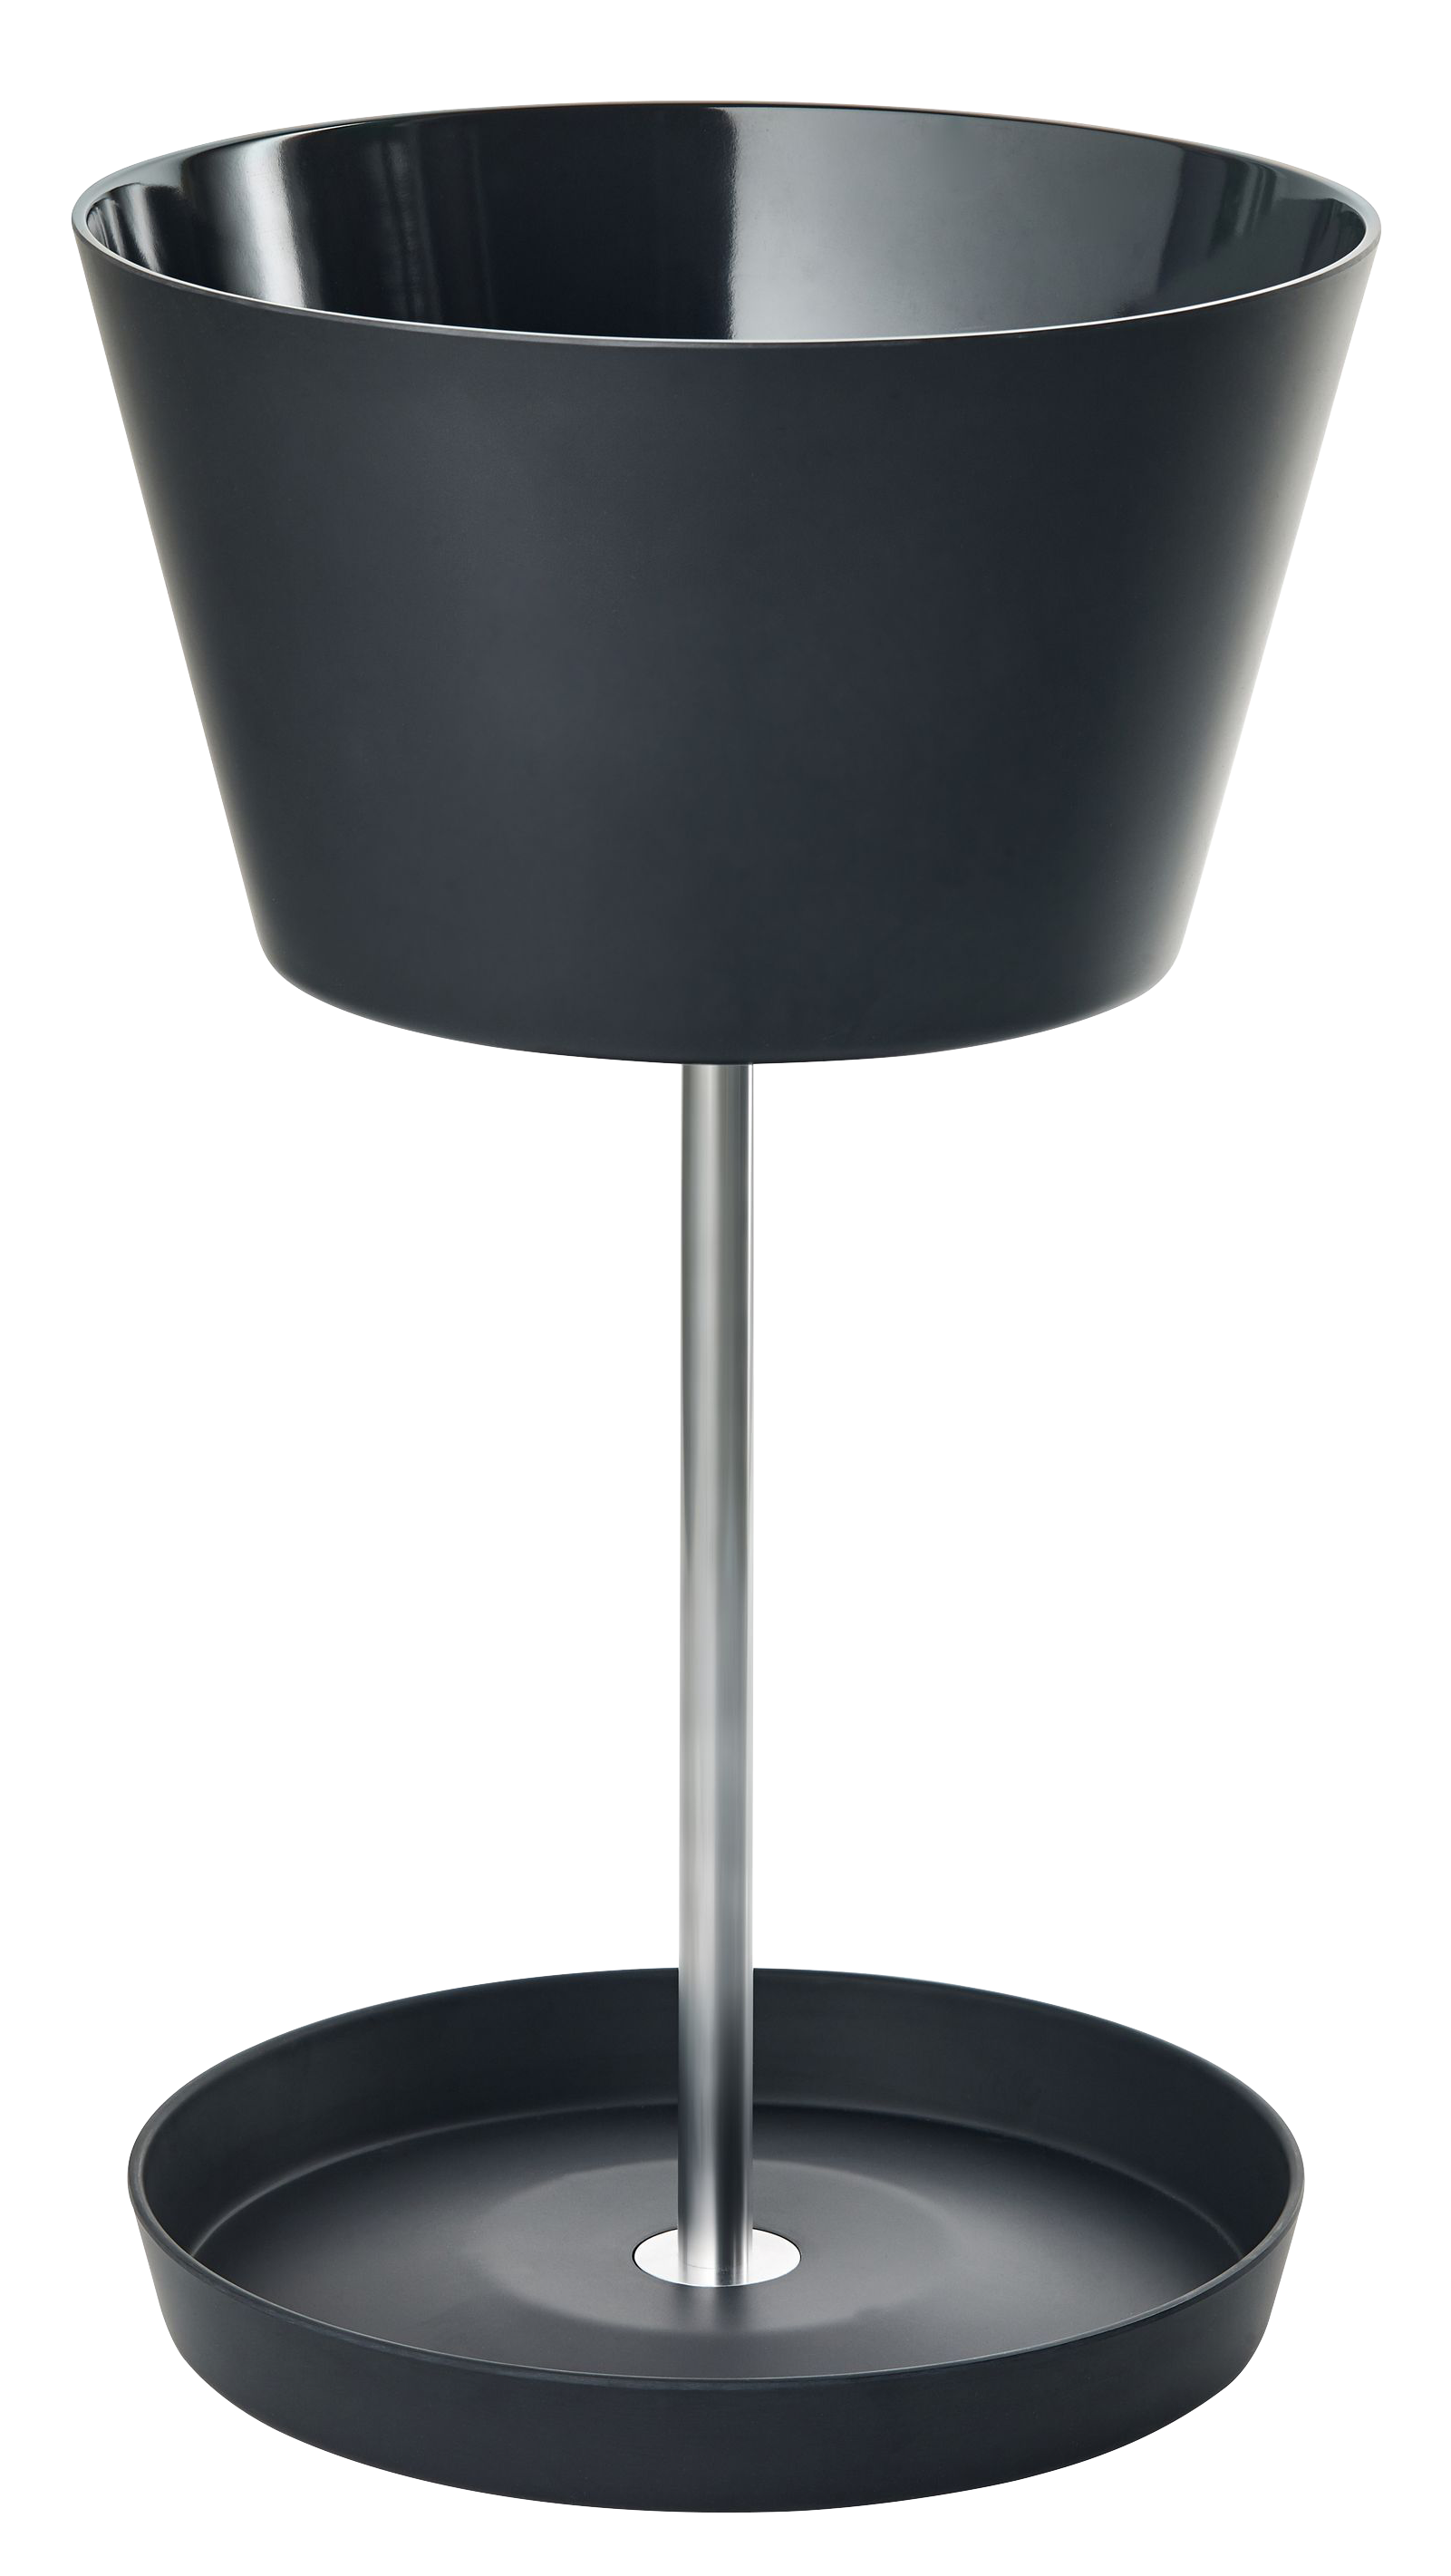 BASKET Schirmständer in anthrazit präsentiert im Onlineshop von KAQTU Design AG. Schirmständer ist von Pieperconcept